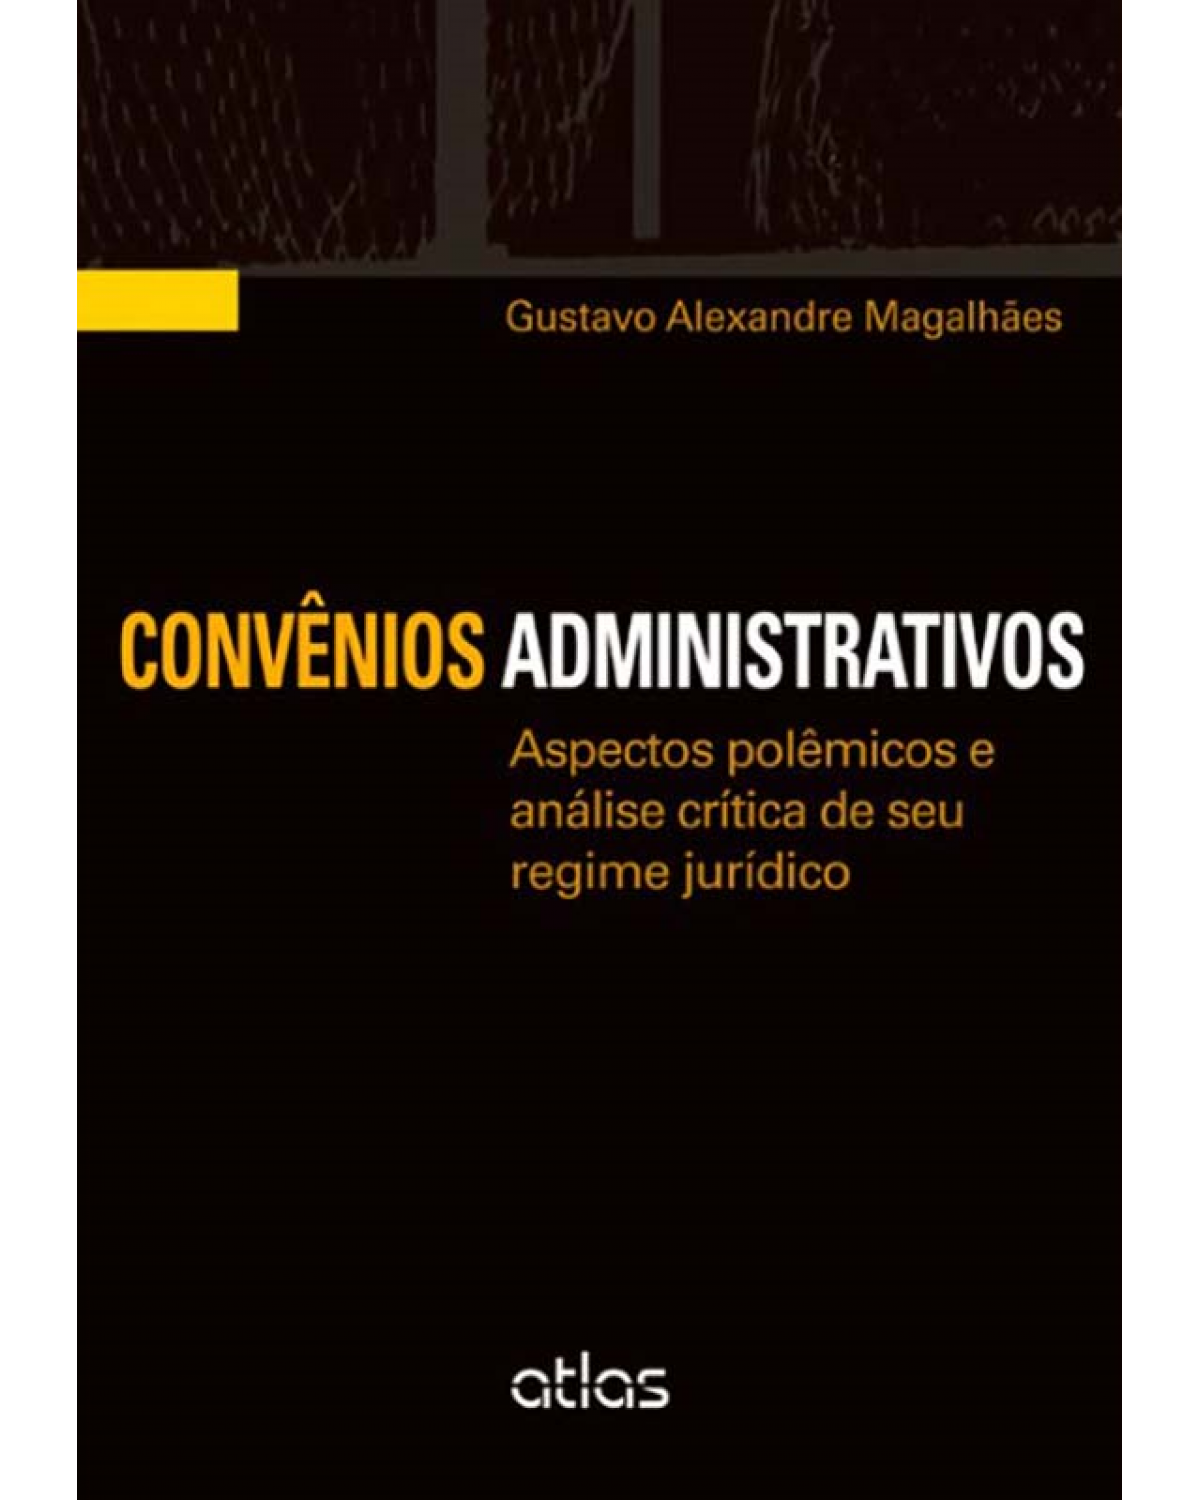 Convênios administrativos - Aspectos polêmicos e análise crítica de seu regime jurídico - 1ª Edição | 2012